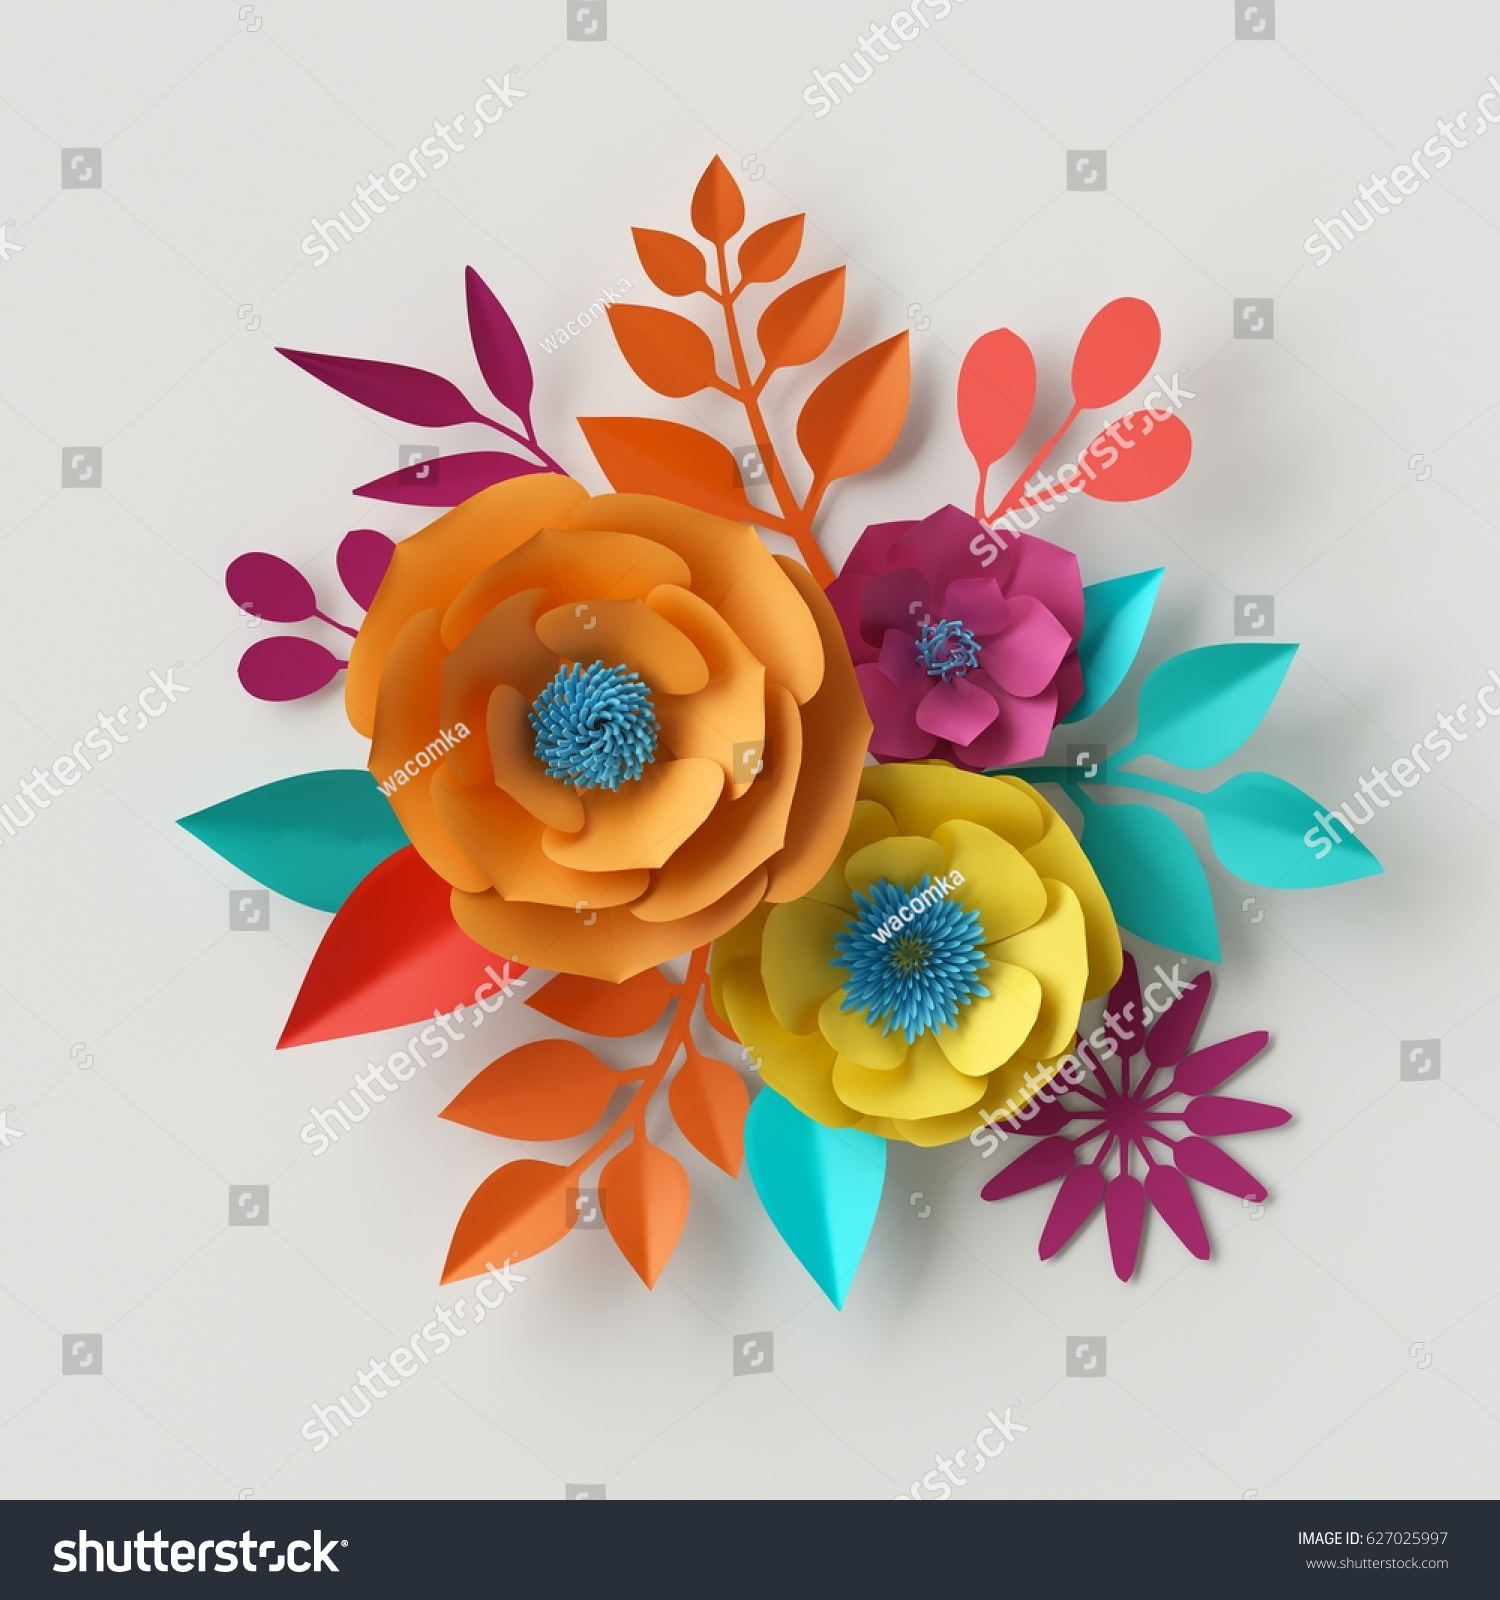 3dレンダリング デジタルイラスト カラフルな紙の花の壁紙 春の夏の背景 白い背景に花柄のブーケ 鮮やかな色 ミントピンクのオレンジの黄色 のイラスト素材